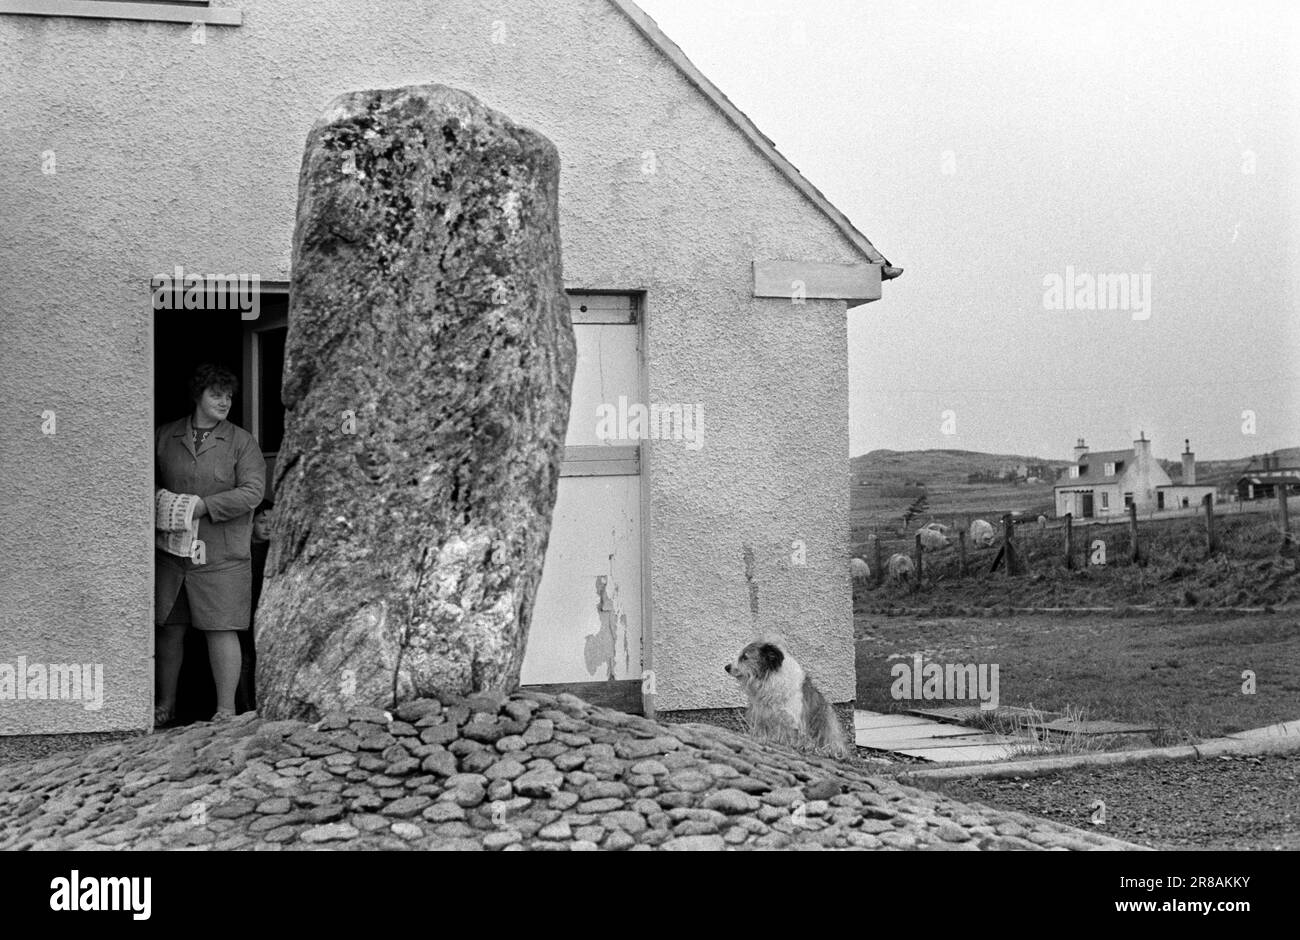 Callanish, Île de Lewis, Hébrides extérieures Écosse juin 1974. Une pierre éloignée dans le domaine résidentiel du conseil de Stonefields. C'est la maison numéro 14 Stonefield. La pierre est Callanish XII, une partie de l'immense réseau qui couvre cette zone et probablement aligné avec la lune d'une certaine manière. La locataire et son chien. Années 1970 Écosse Royaume-Uni HOMER SYKES Banque D'Images